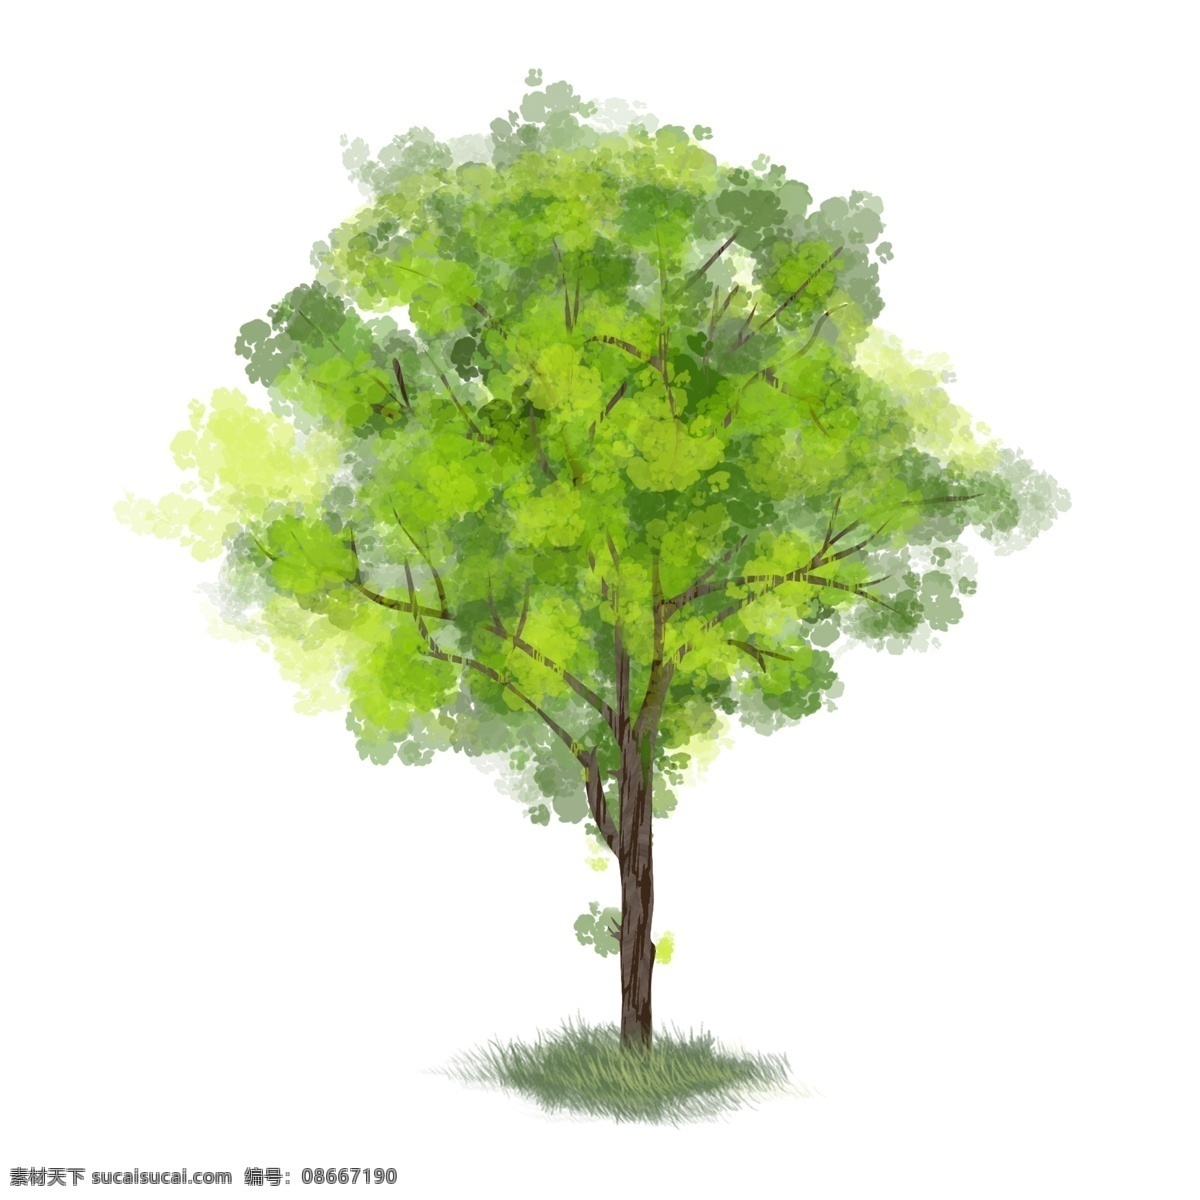 绿树 青草 手绘 风 图 商用 树枝 绿色 叶子 树叶 小草 褐色 枝丫